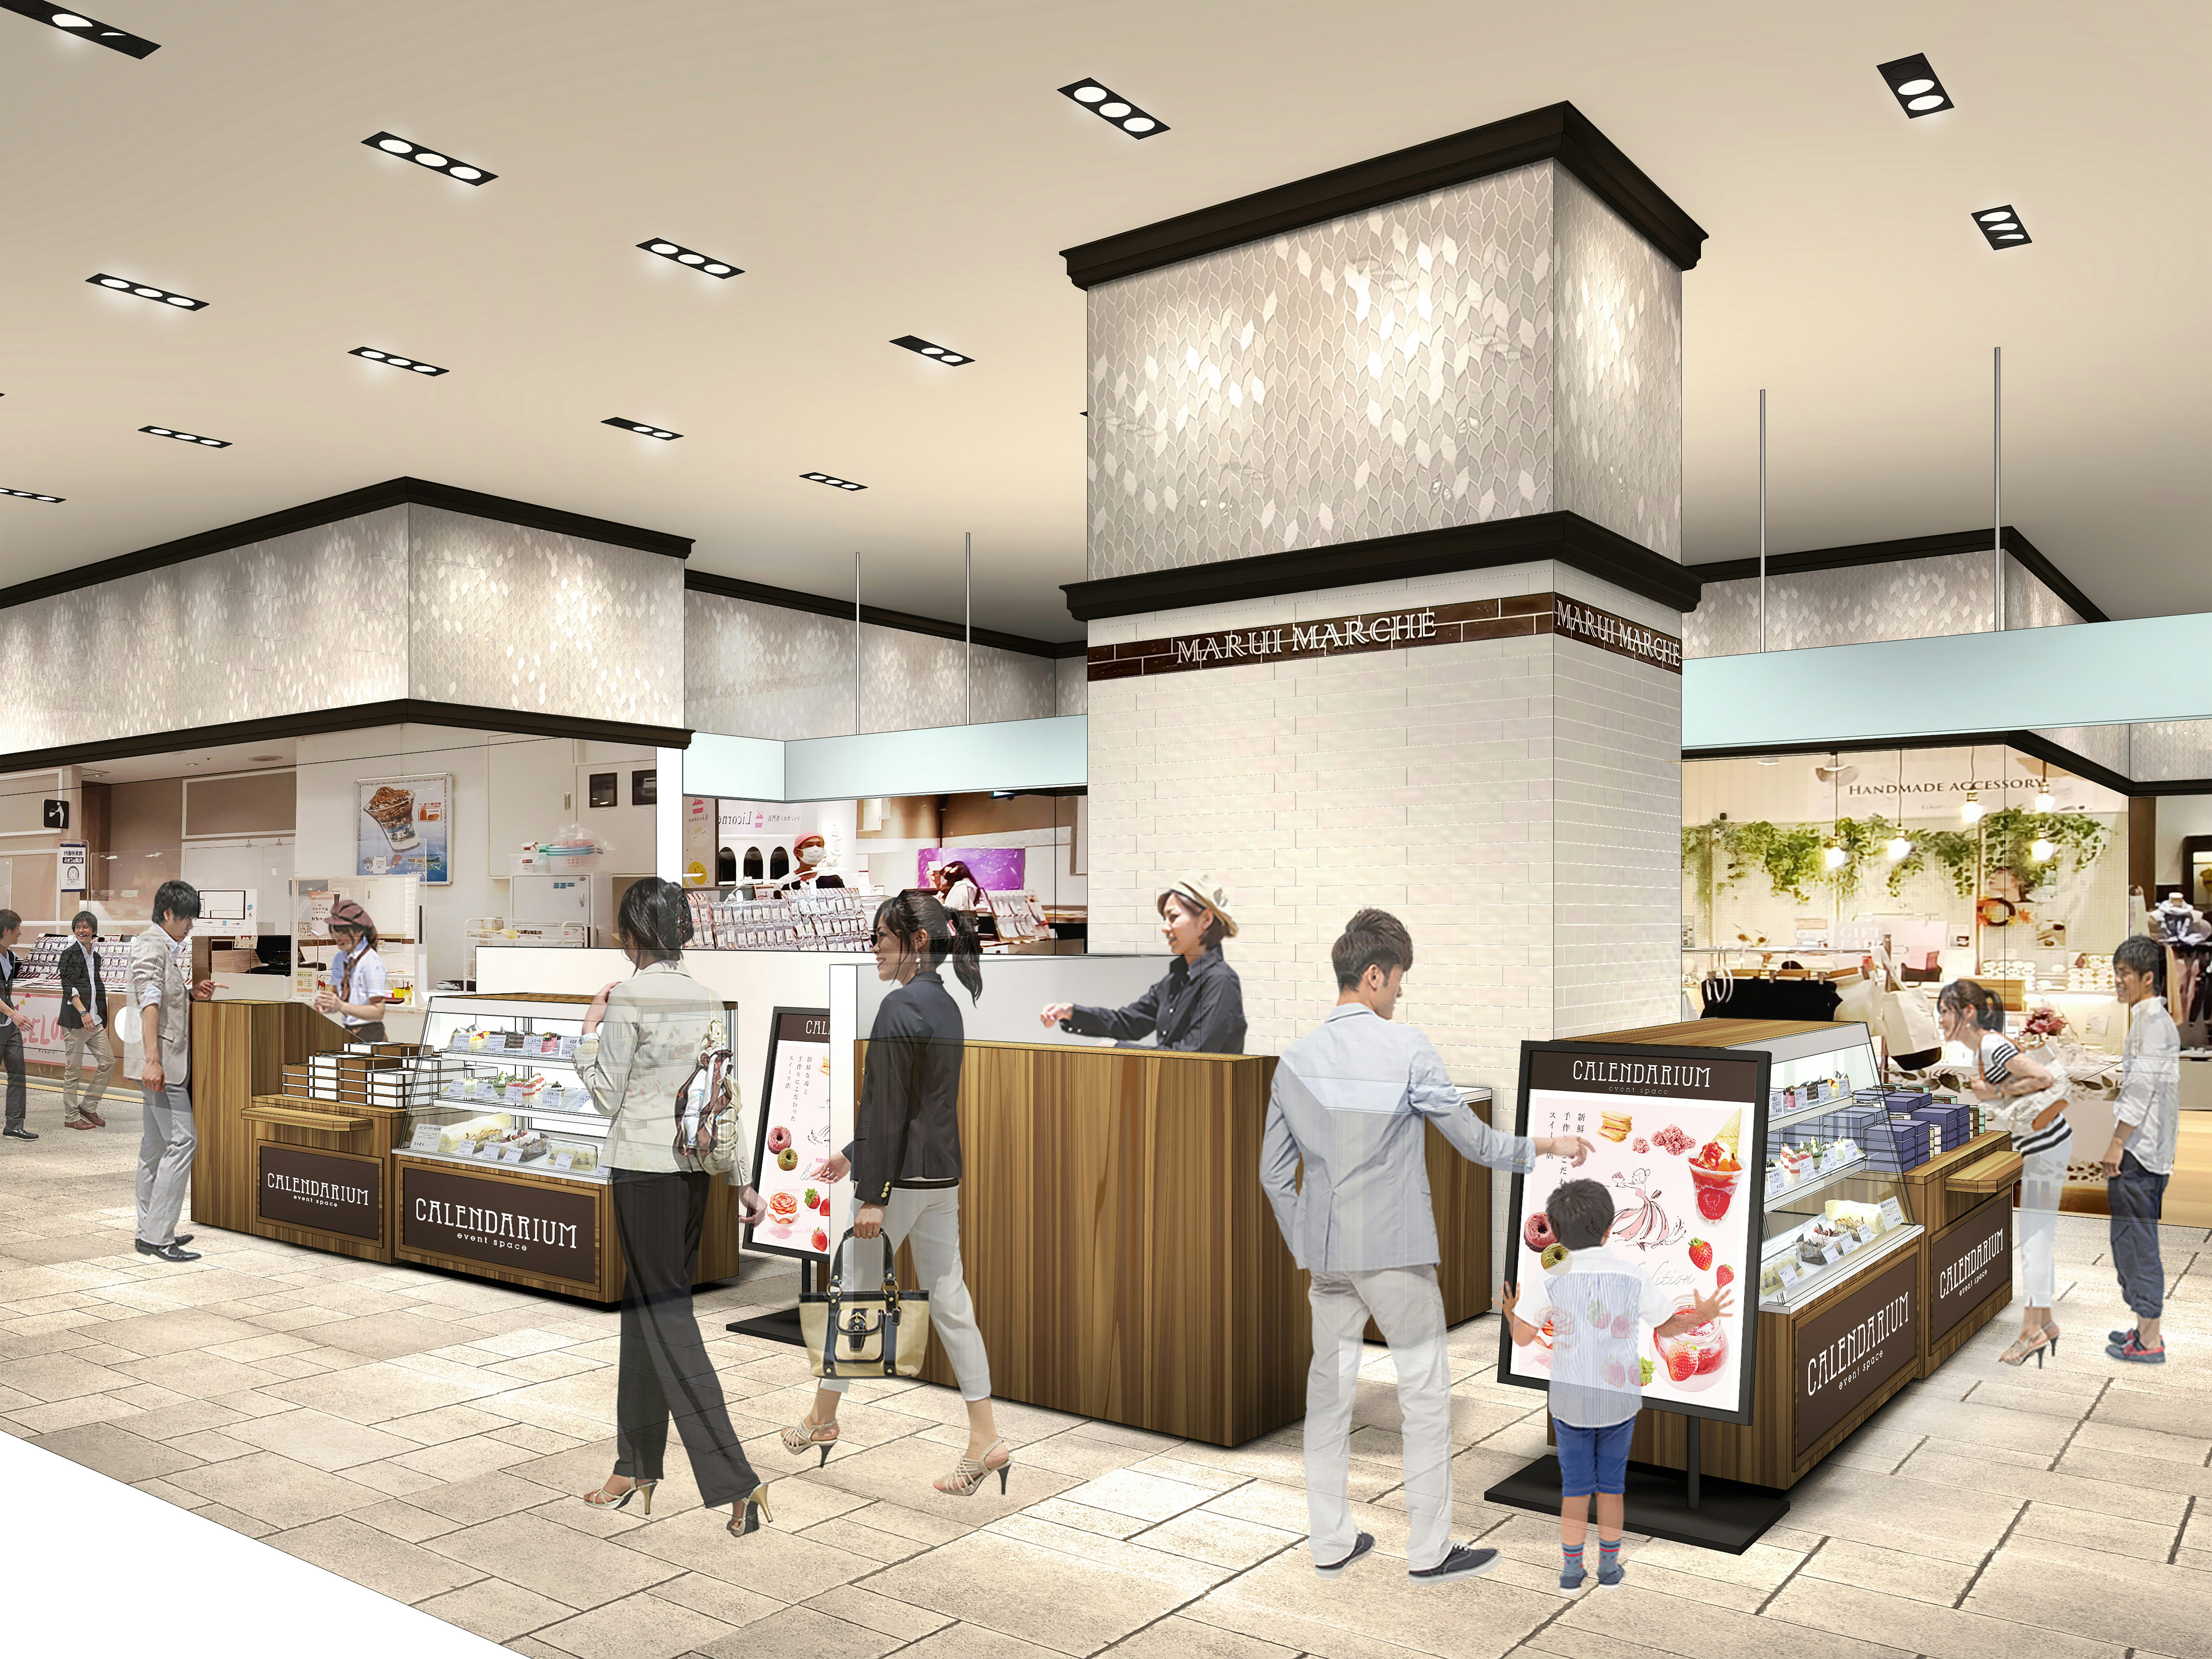 【神戸マルイ 1階 カレンダリウムF01】1階フロア中央に位置する食物販の専用スペース